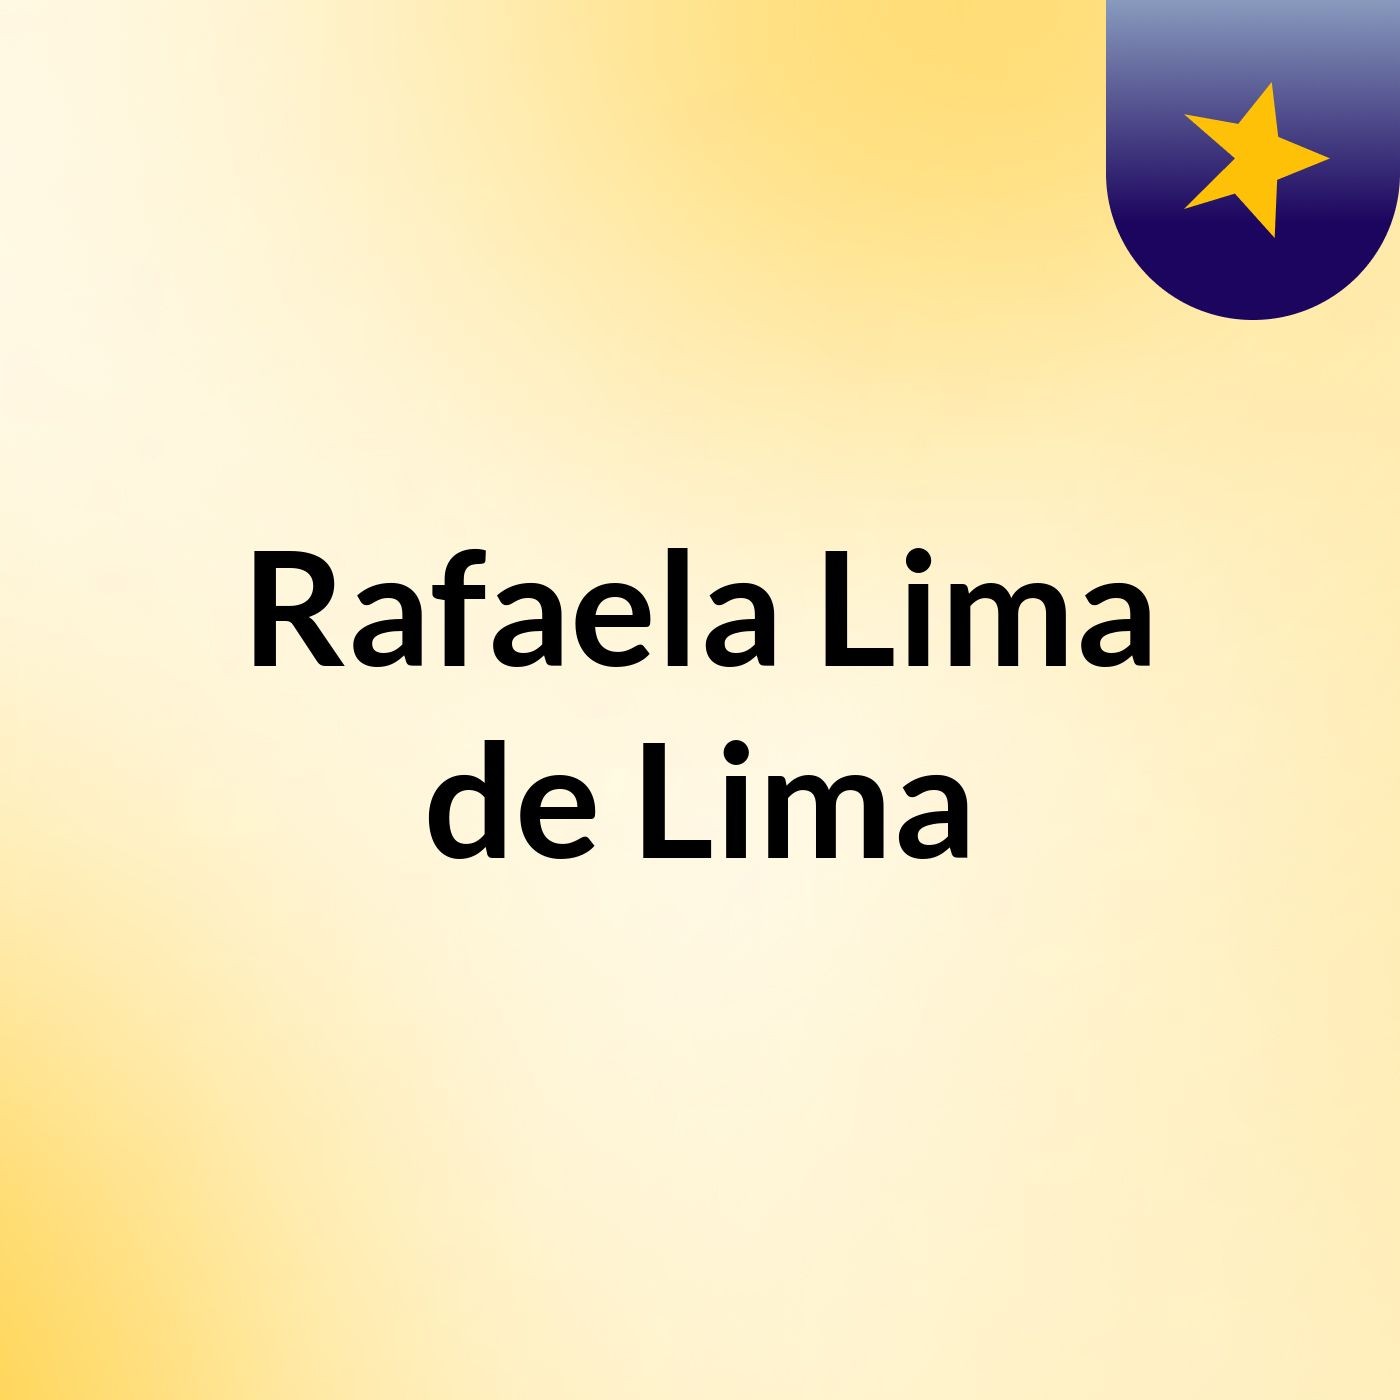 Rafaela Lima de Lima